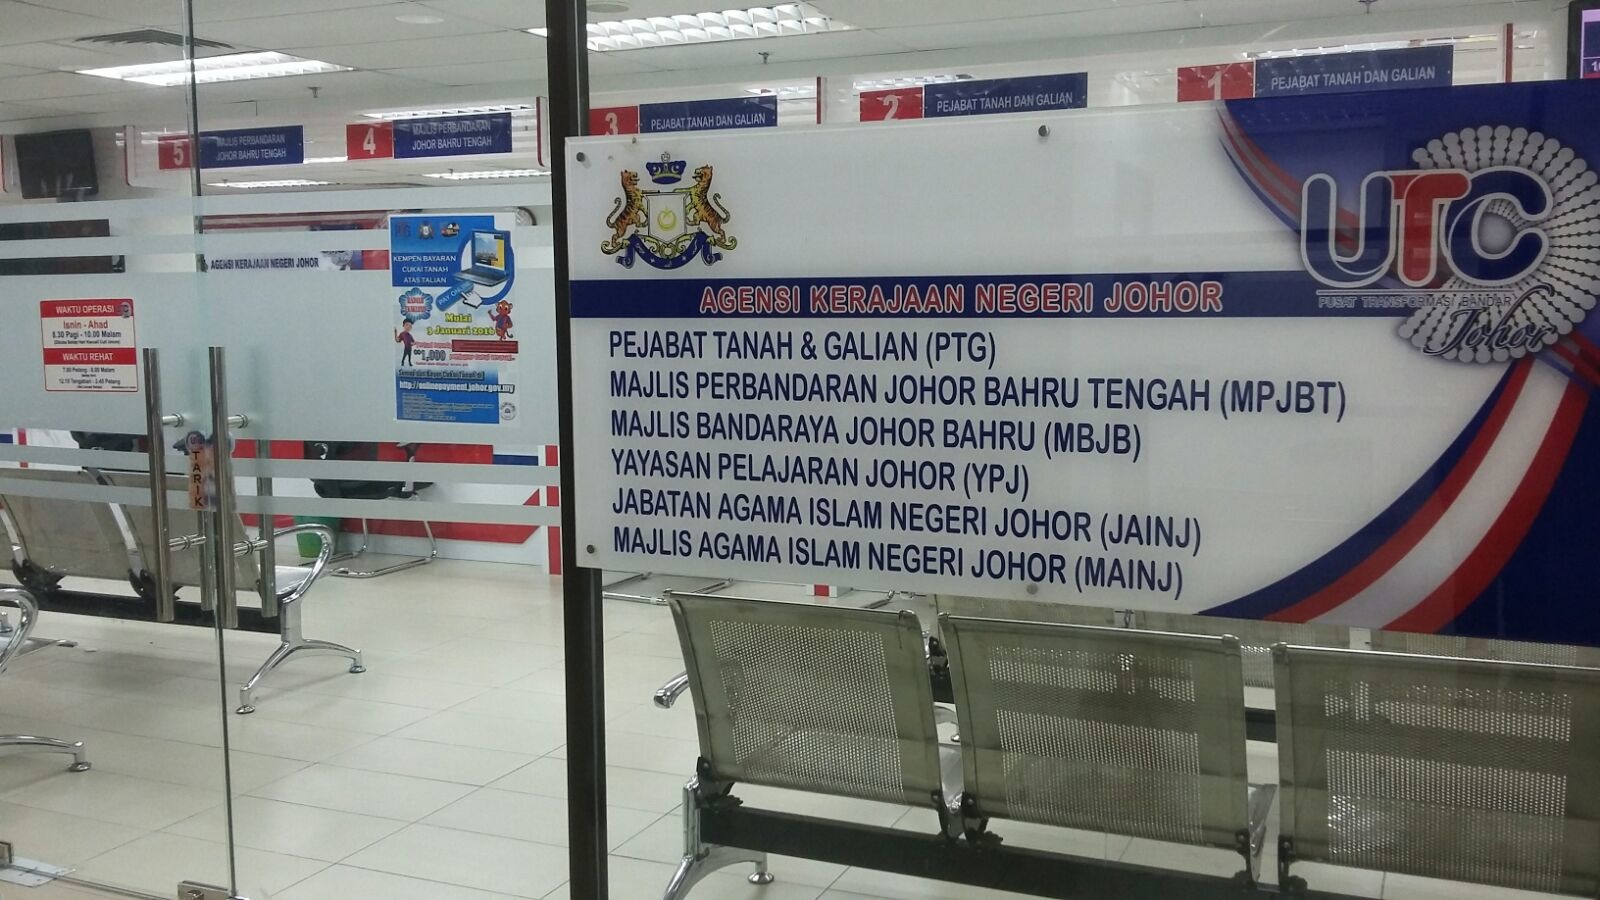 Majlis Bandaraya Iskandar Puteri (MBIP)